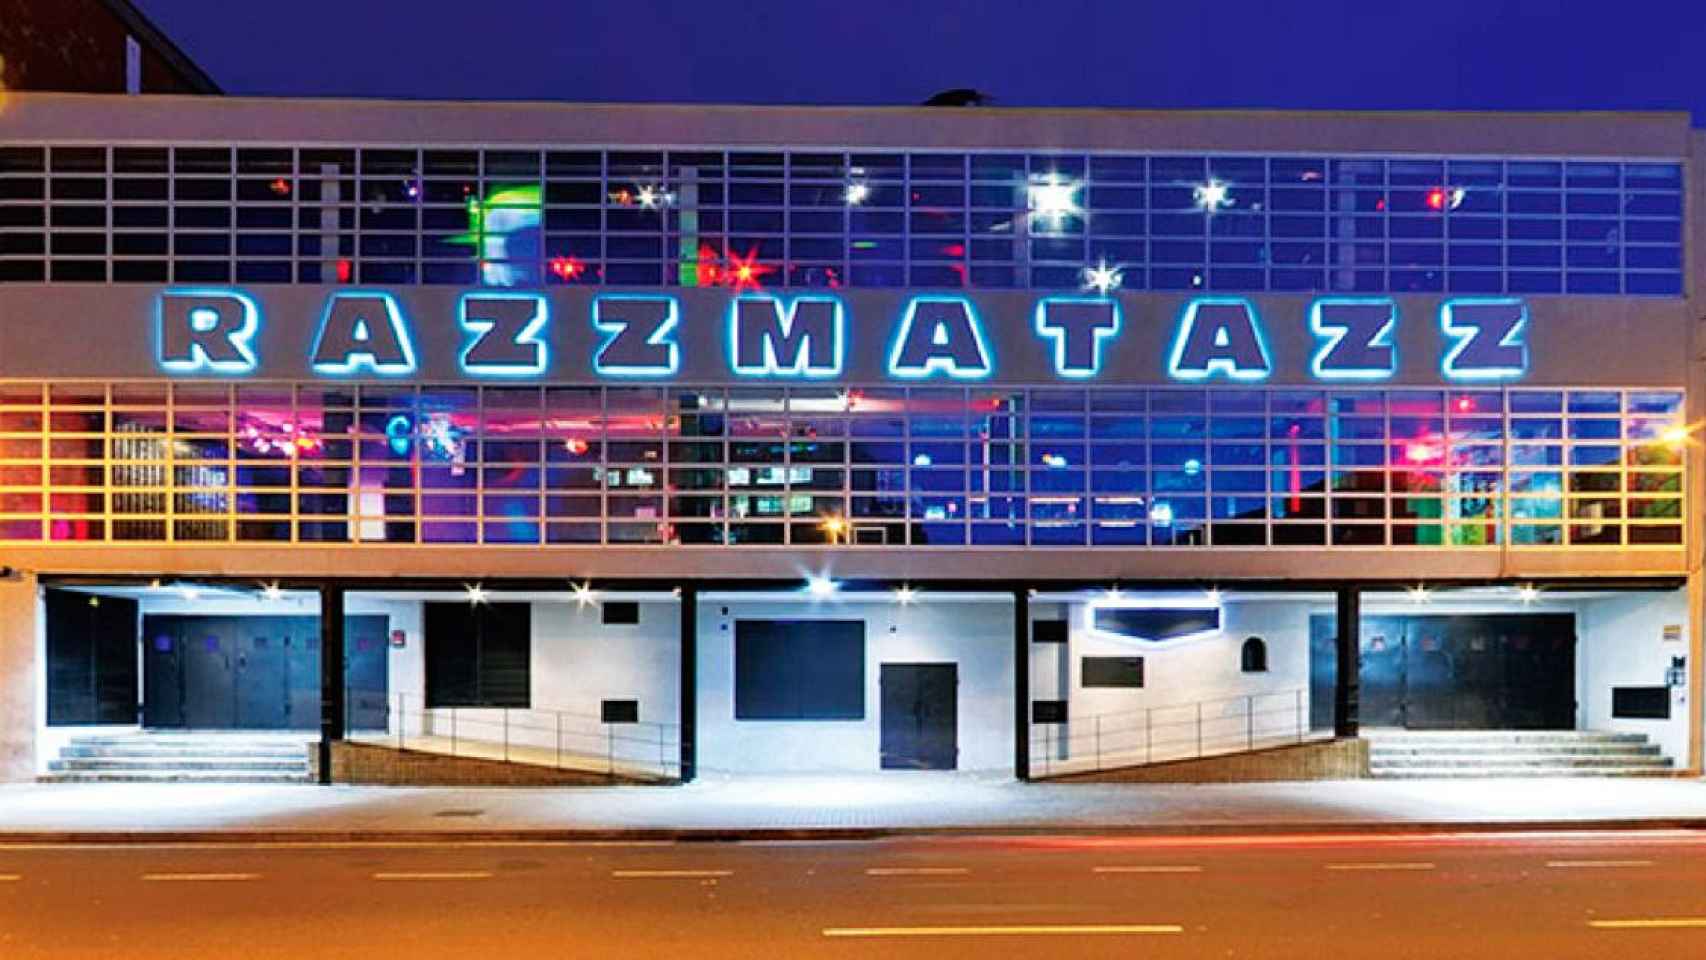 Imagen de Razzmatazz, una de las discotecas más conocidas de Barcelona / CG